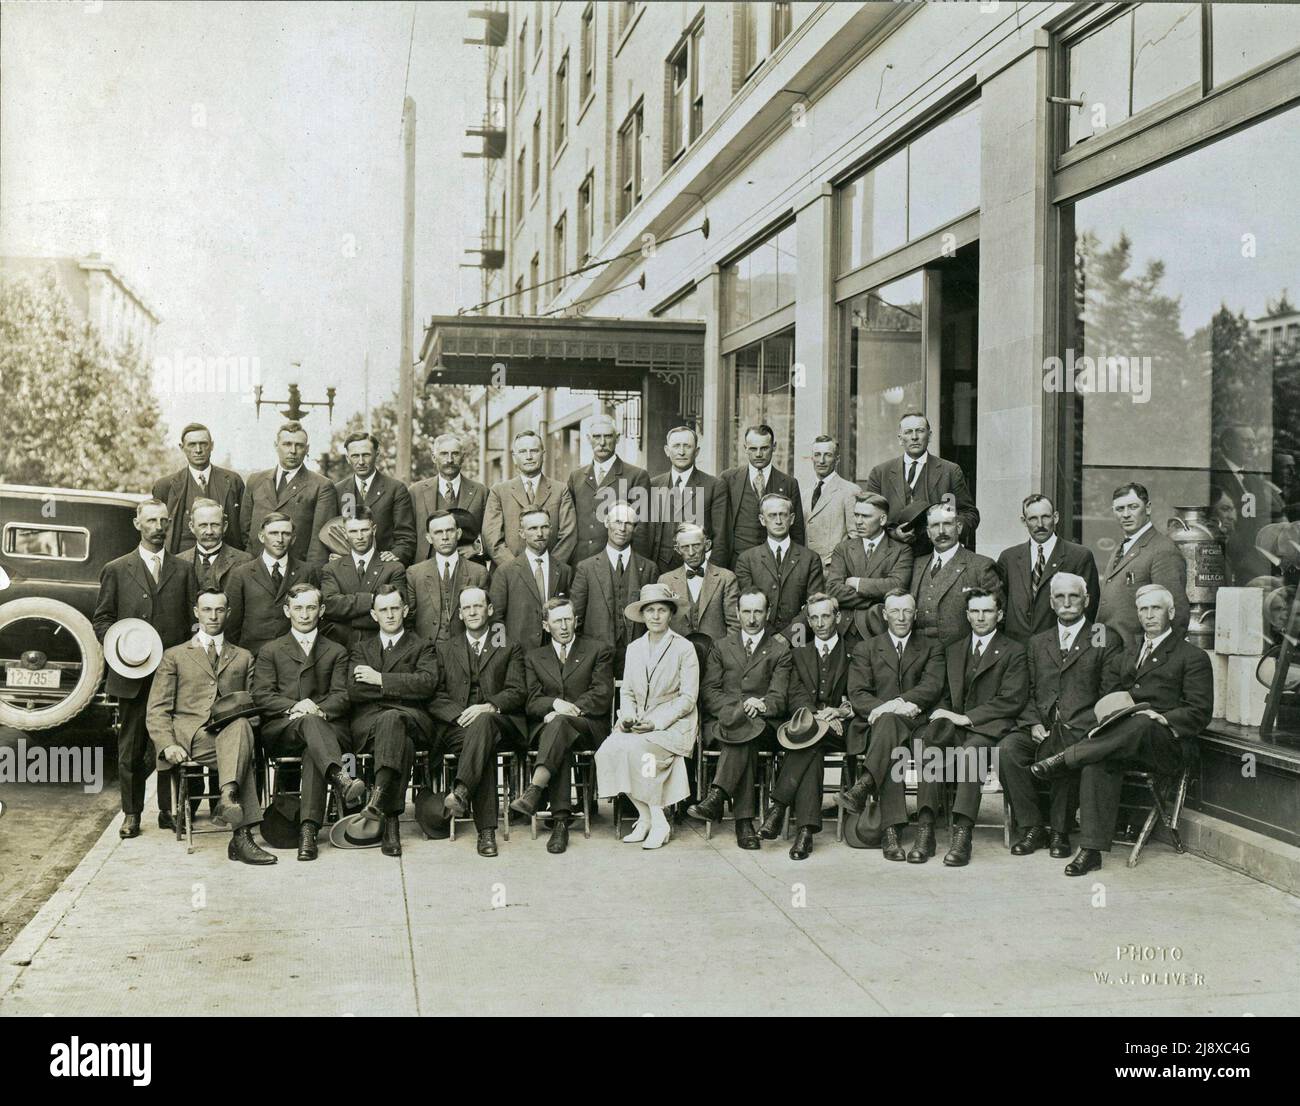 Foto B&W dei membri legislativi dell'UFA dell'Alberta eletto nel luglio 1921 di fronte all'edificio Lougheed. La didascalia sotto la fotografia recita: Front Row (da sinistra a destra) - G. A. Forster, Lorne Proudfoot, A. M. Matheson, L. Peterson, N. S. Smith, Sig.ra W. Parlby, Geo. MacLachlan, S. A. Carson, D. M. Kennedy, E. C. Cook, G. W. Smith, W. C. Smith / riga centrale (da sinistra a destra) - W. M Washburn, Geo.a. Hoadley, G. N. Johnson, Laudas Joly, W. Fedun, D. H. Galbraith, Alex Moore, M. J. Conner, C. O. F. Wright, O. L. McPherson, D. Cameron, W. H. Shield, A. B. Claypool / Back Row (da sinistra a destra) - P. J. Enzenauerm Foto Stock